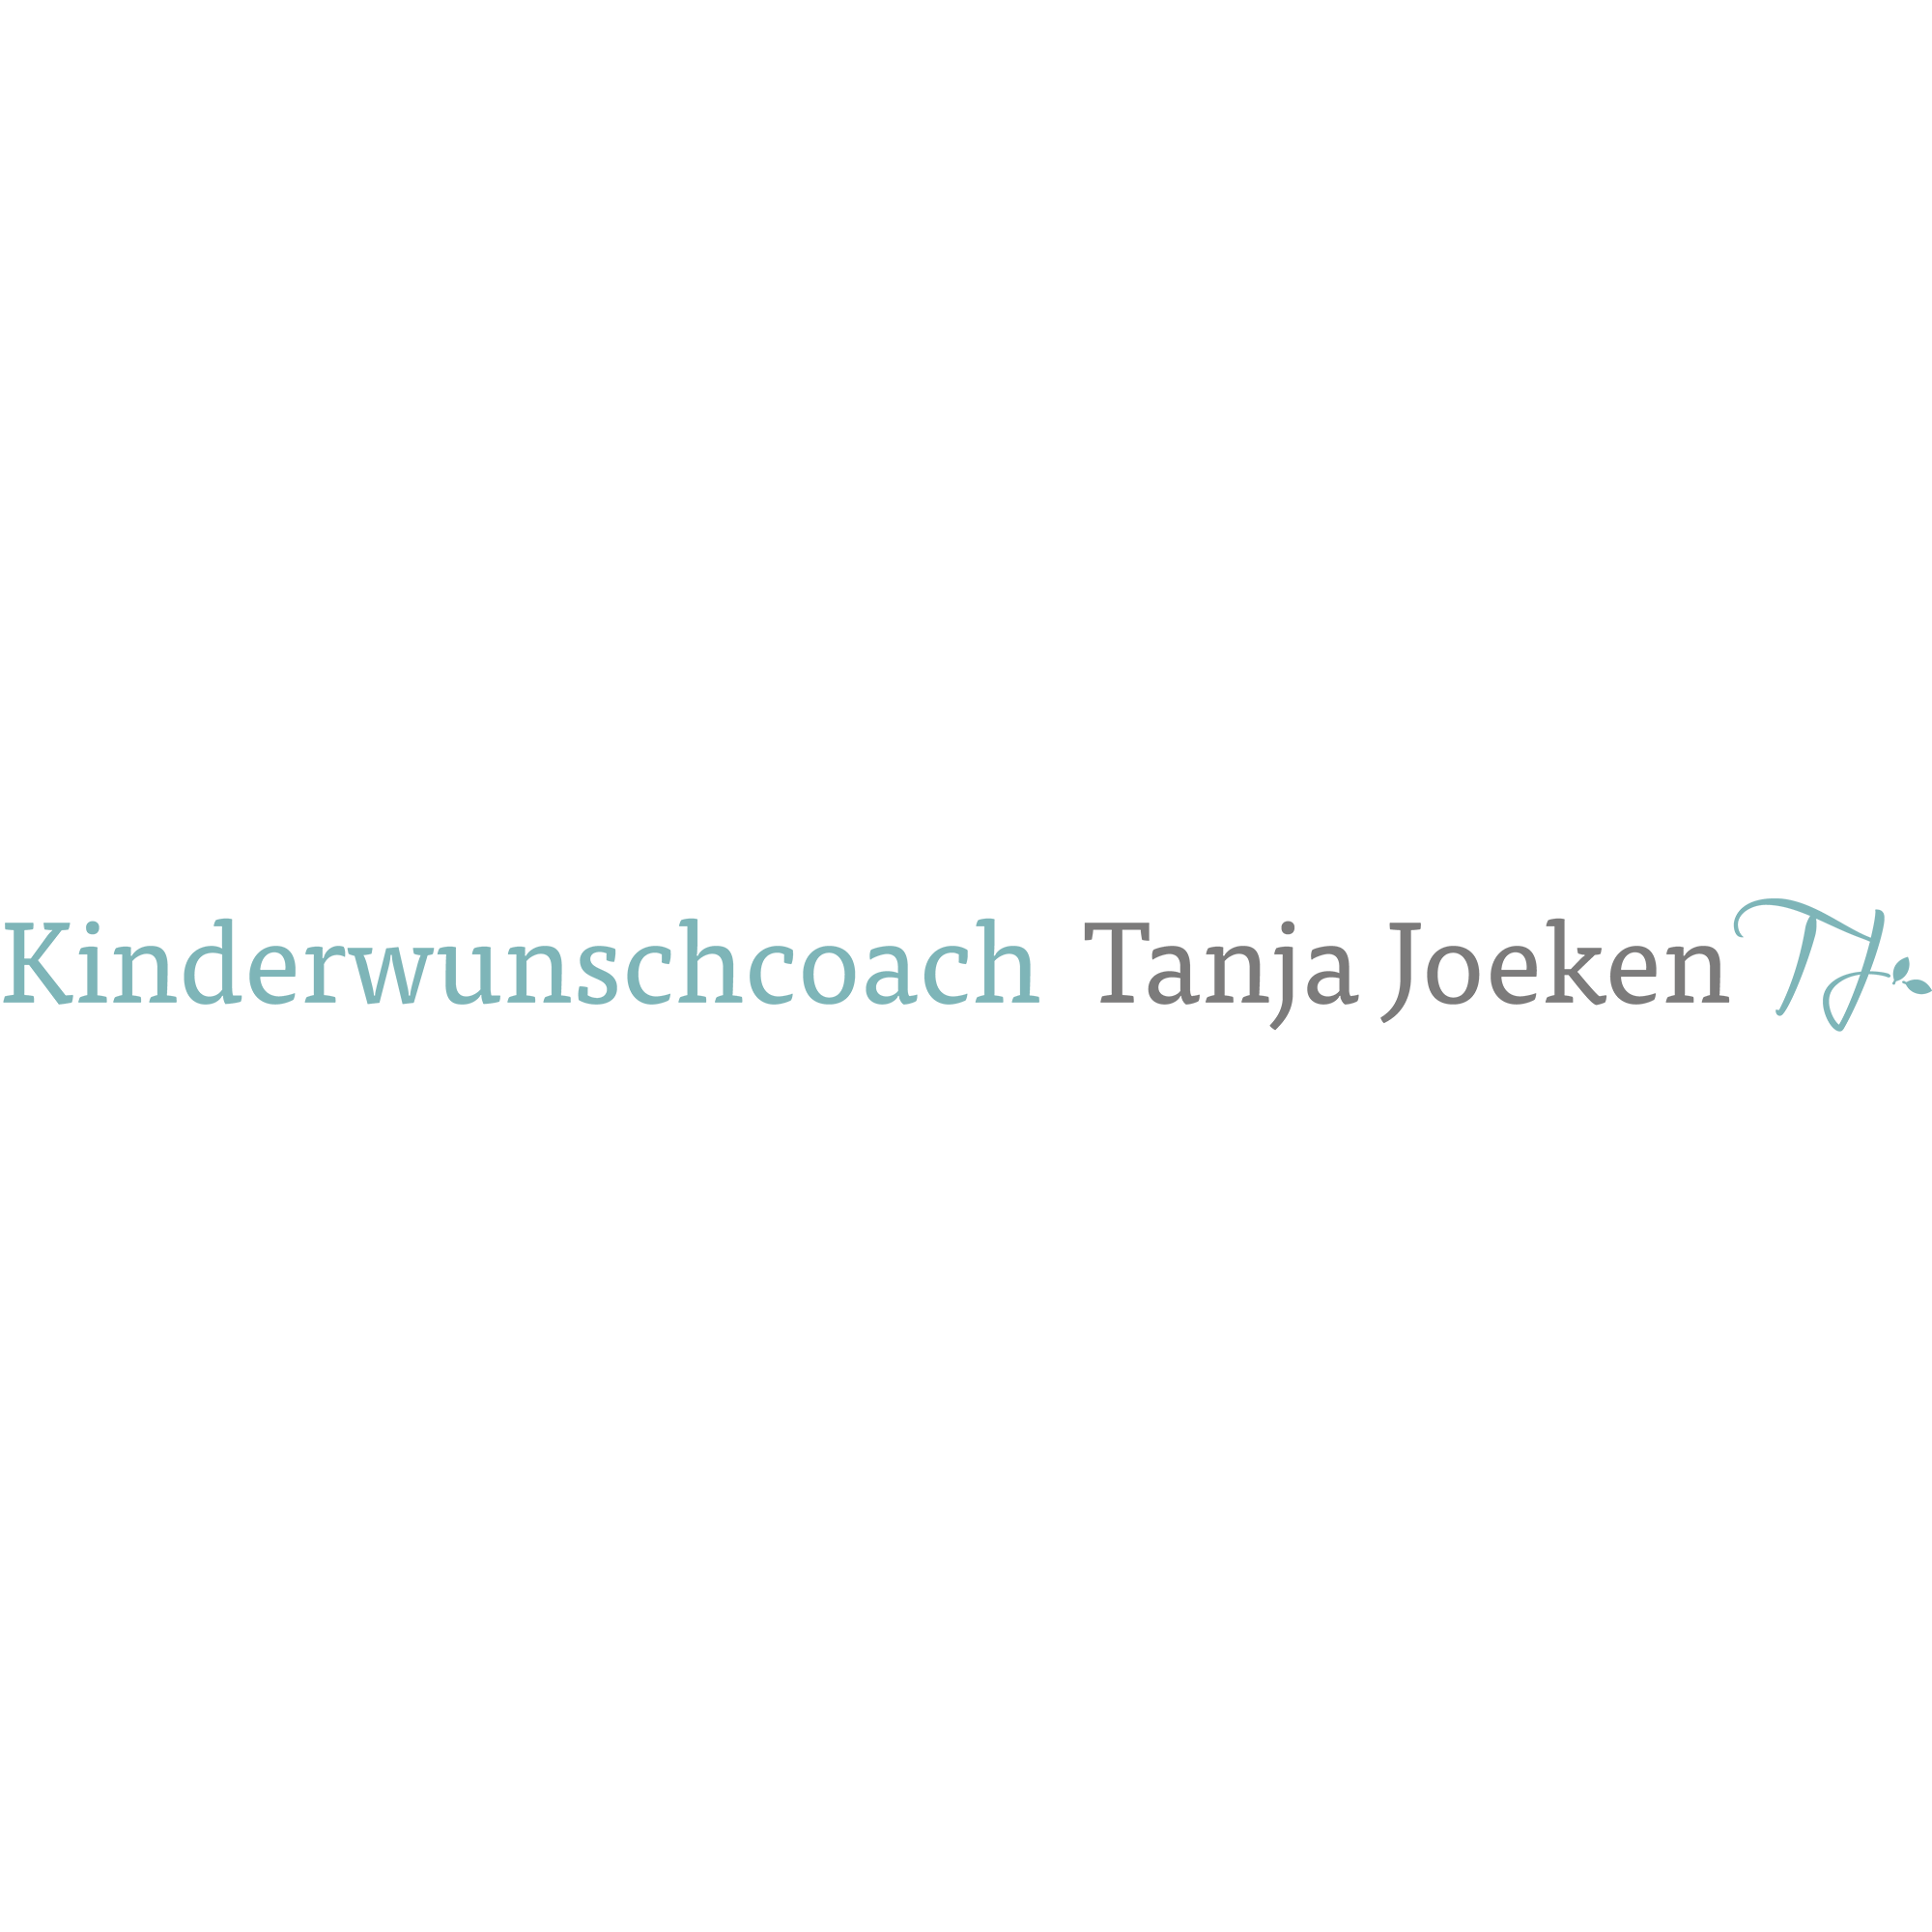 Kinderwunschcoach Tanja Joeken Logo